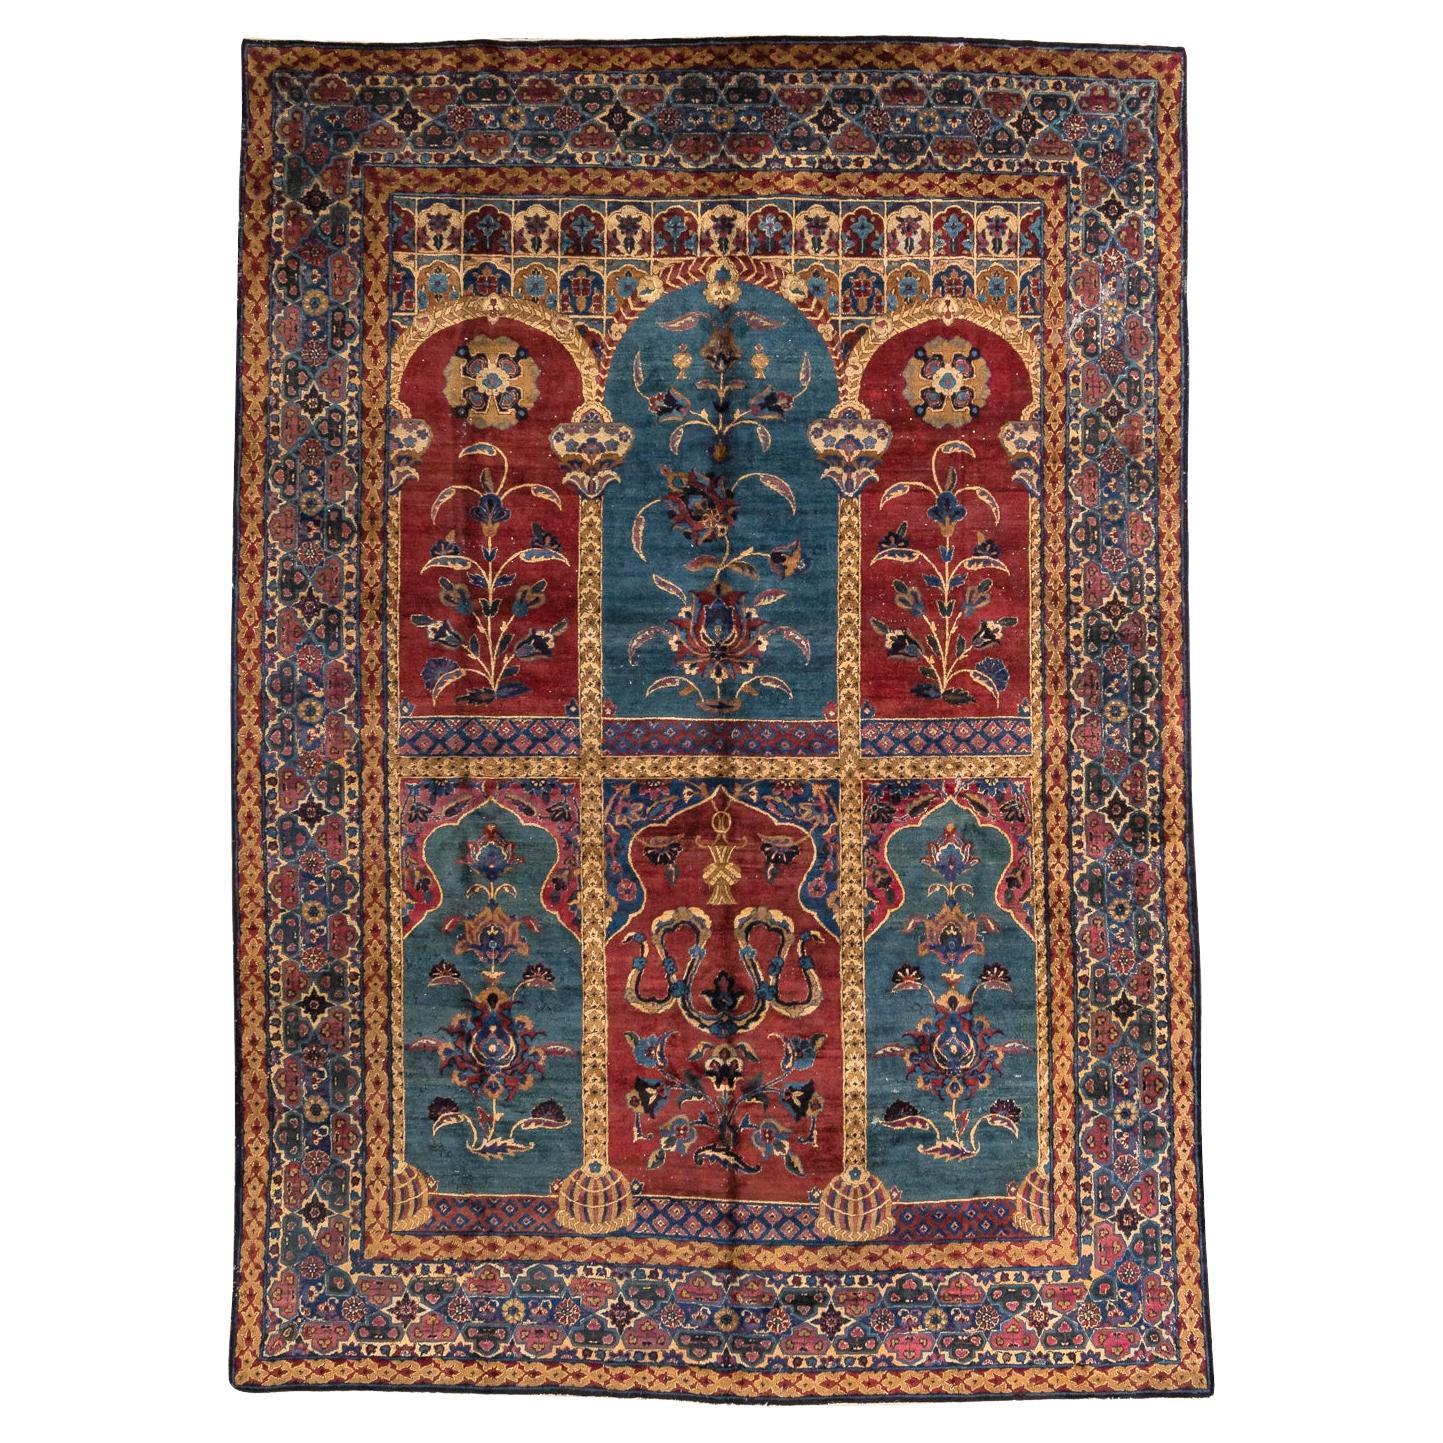 Kerman - Südpersien

Dieser seltene und einzigartige Teppich weist ein von der indischen Ästhetik beeinflusstes Design auf. Der Teppich besteht aus sechs Bögen in bordeaux- und dunkelcyanfarbenen Tönen, die von aufwändig gearbeiteten Säulen getragen